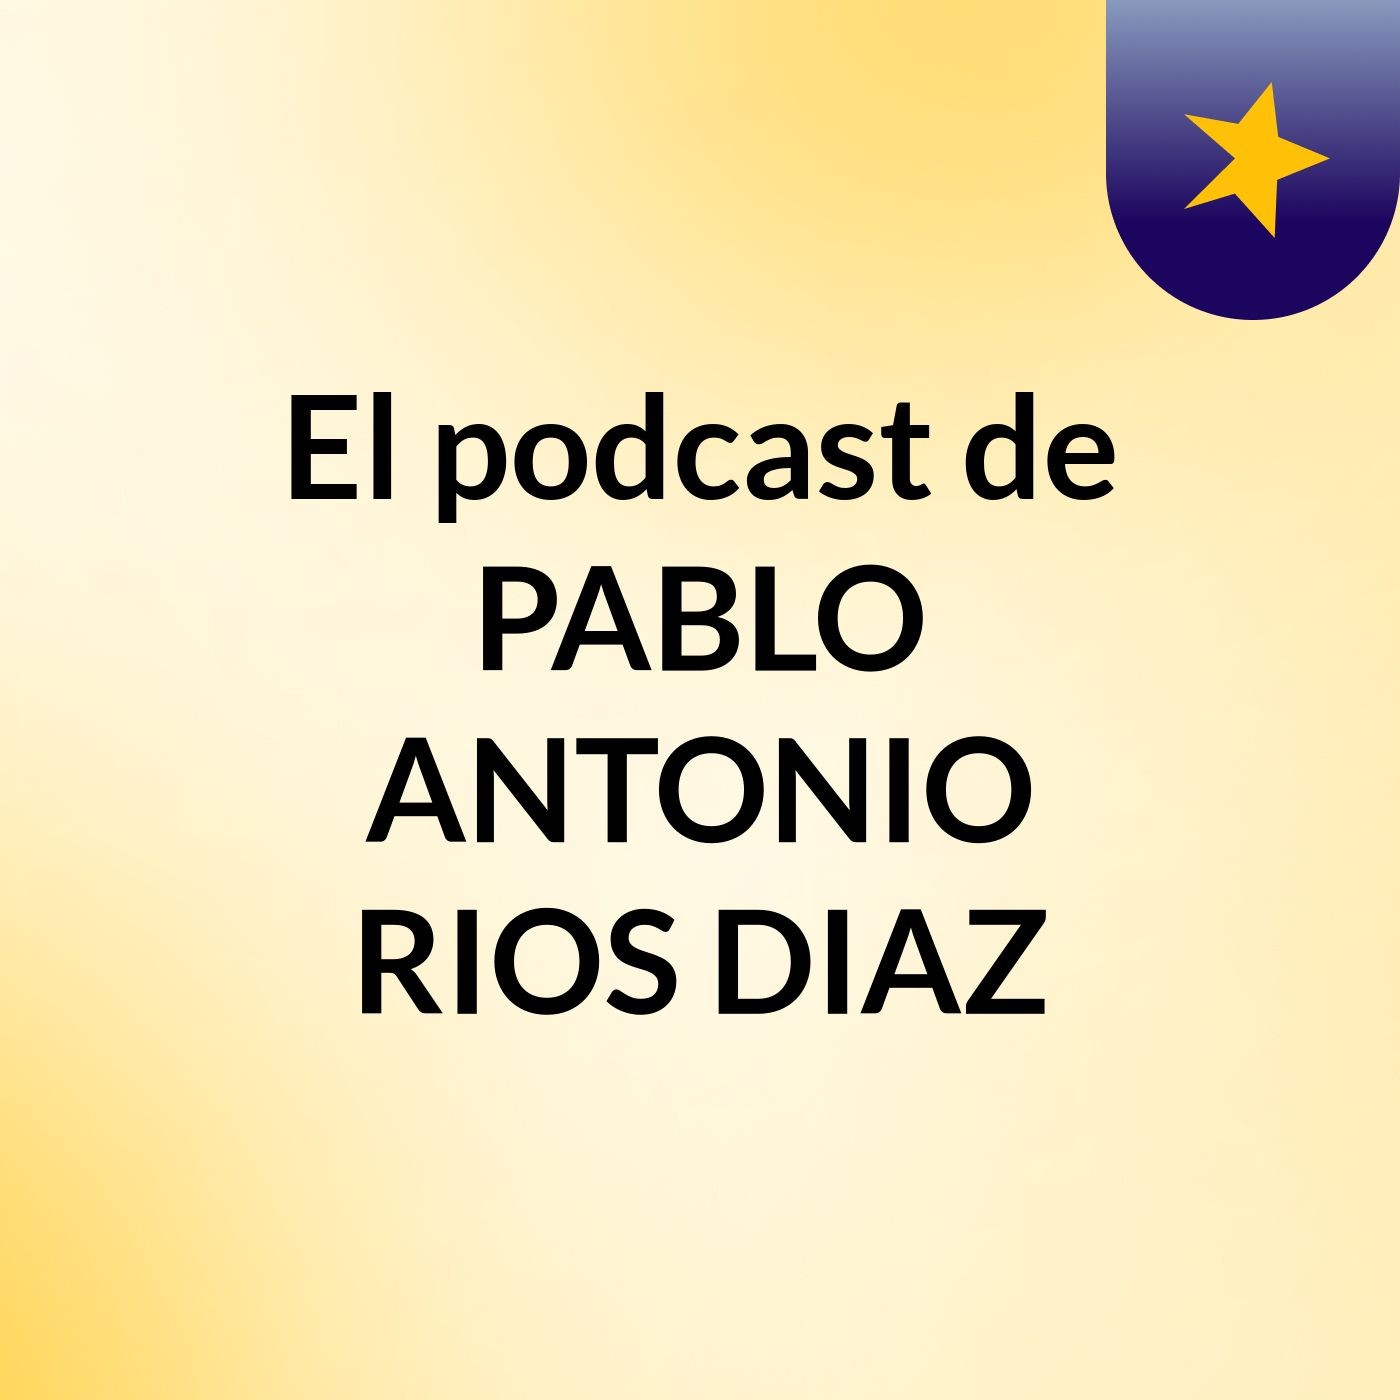 El podcast de PABLO ANTONIO RIOS DIAZ